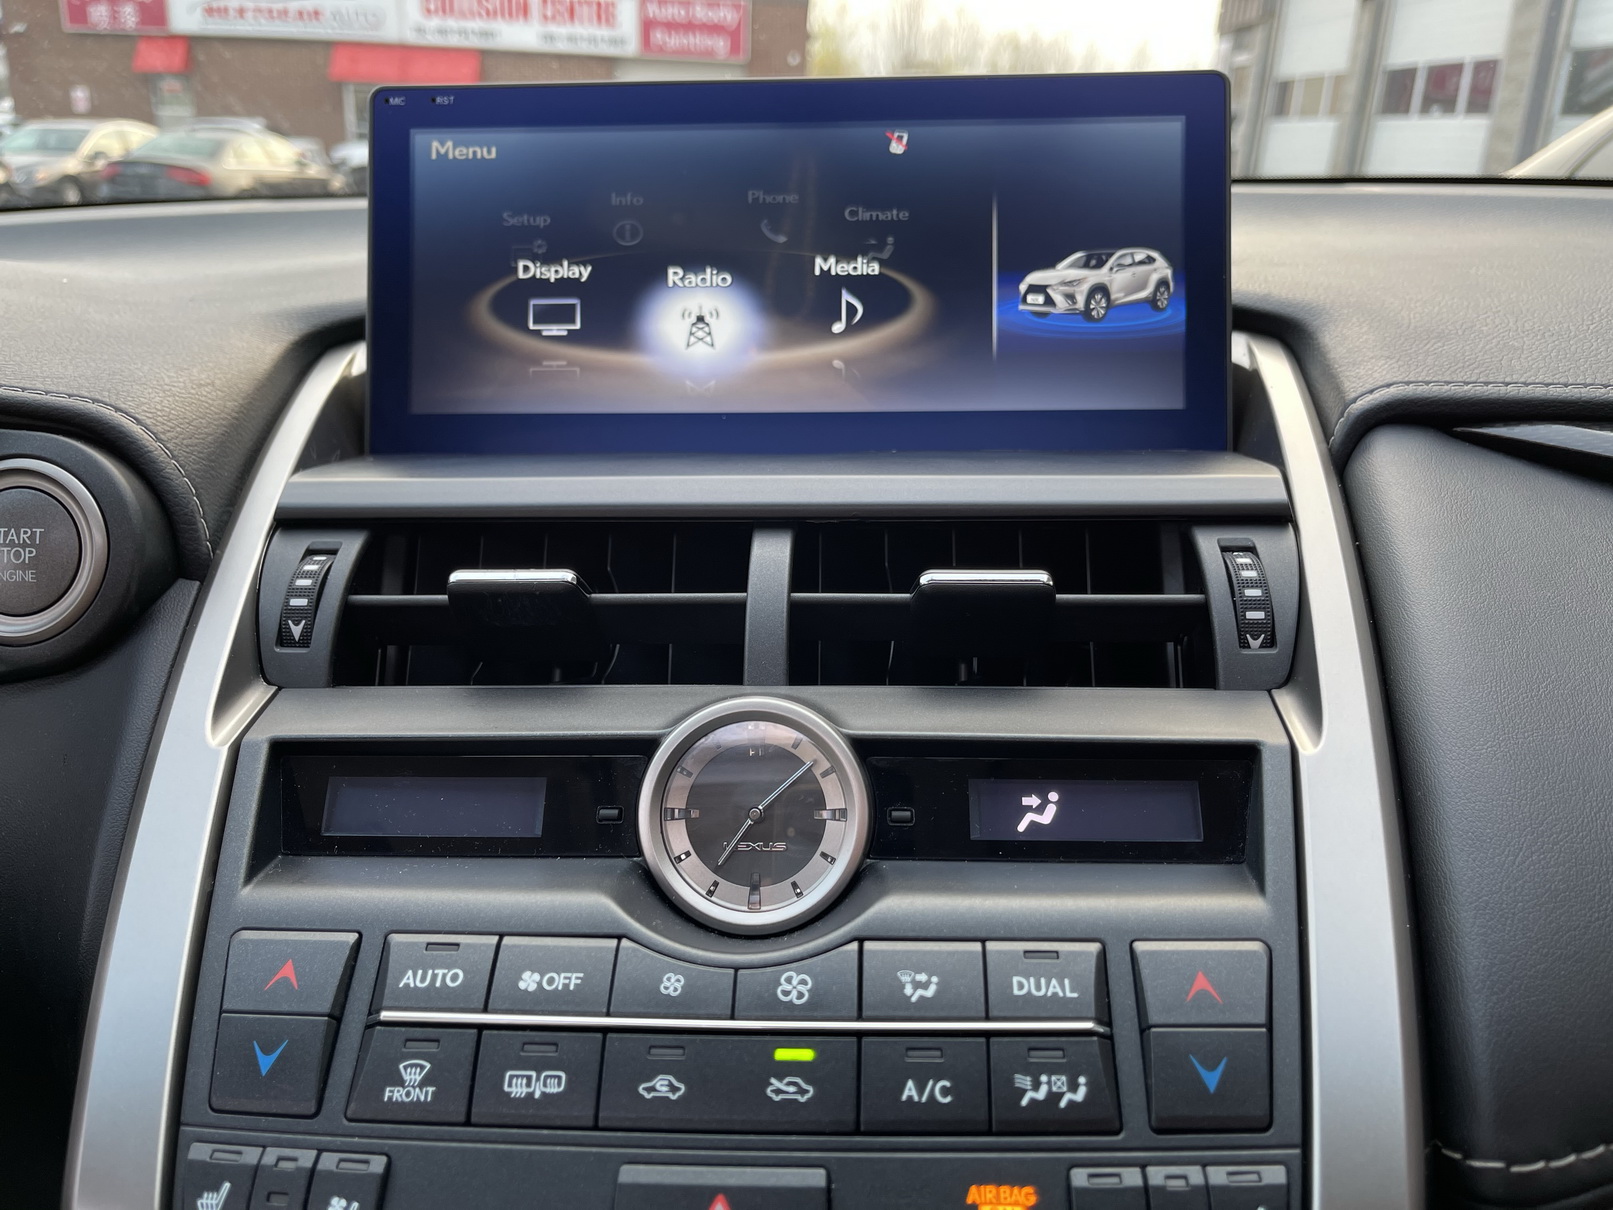 Lexus NX ( 2017- 2021 ) 10.25″ HD Touch-Screen Navigation & Infotainment System | GPS | BT | Wifi | A2DP | CarPlay